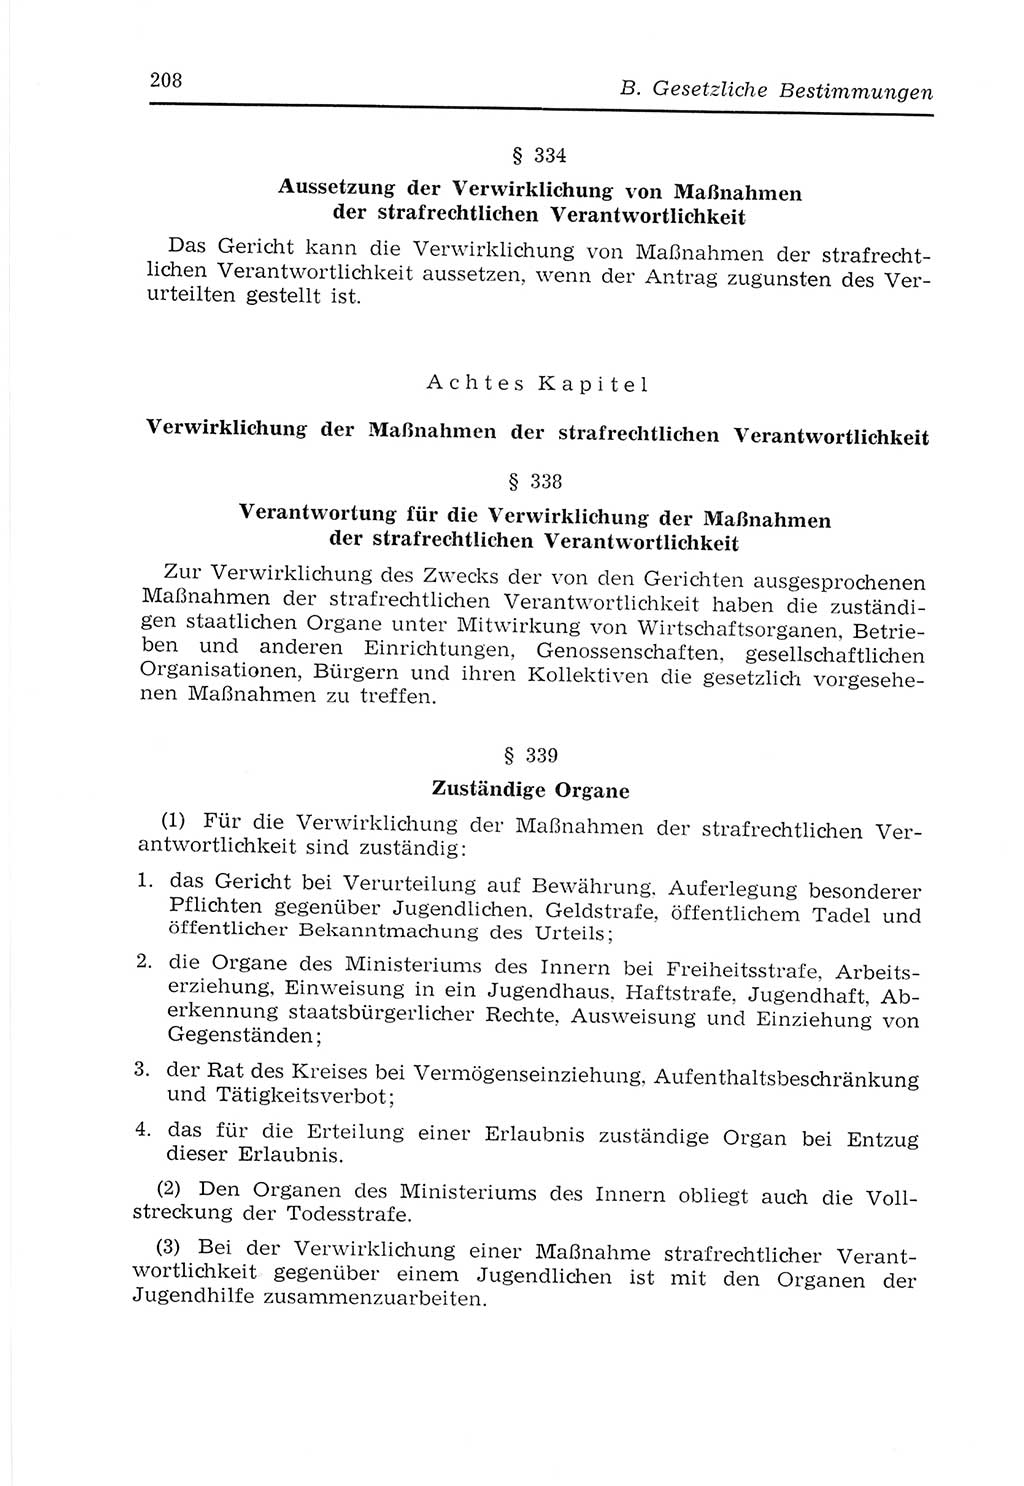 Strafvollzugs- und Wiedereingliederungsgesetz (SVWG) der Deutschen Demokratischen Republik (DDR) 1968, Seite 208 (SVWG DDR 1968, S. 208)